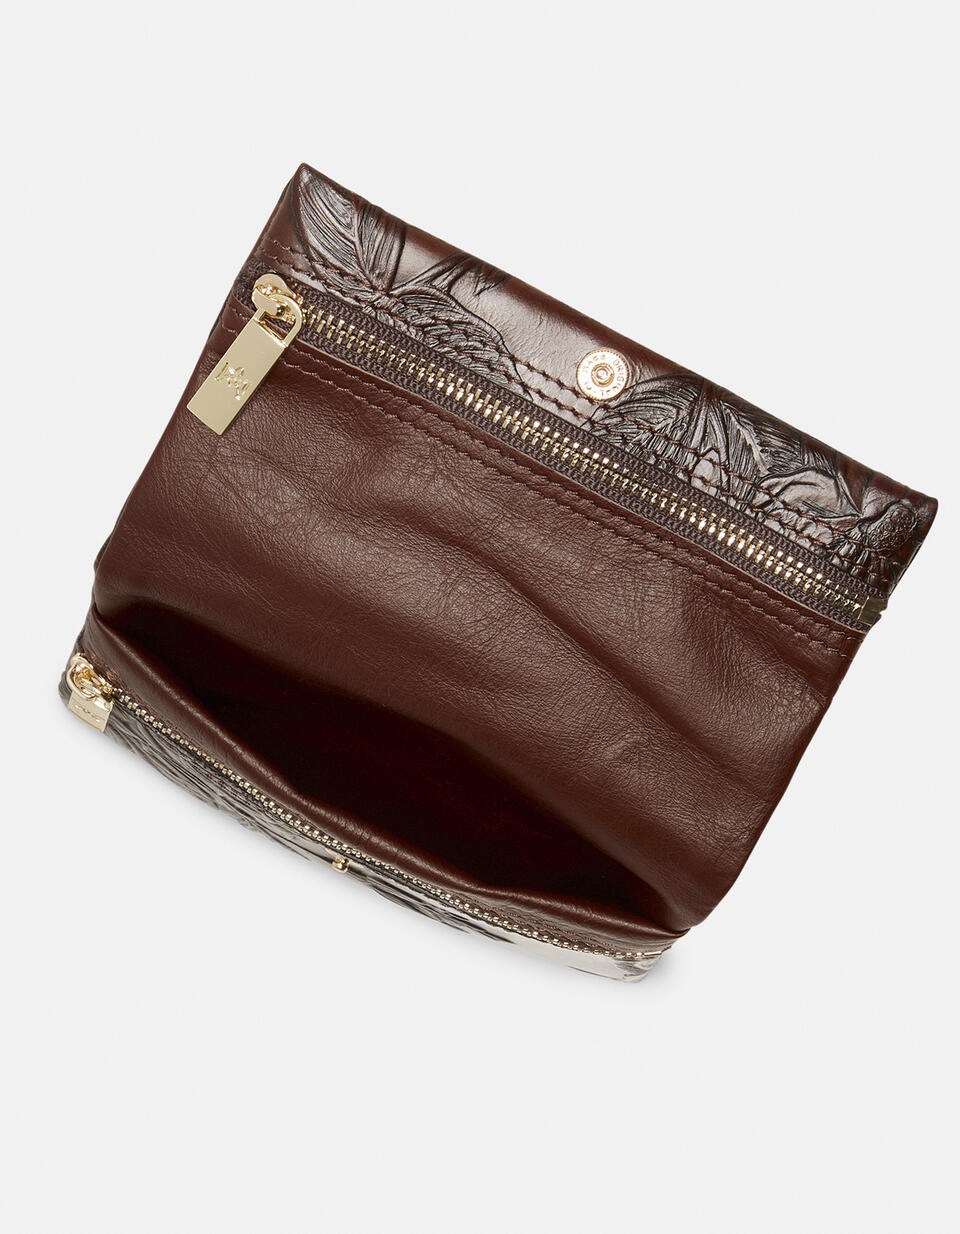 Small purse - Women's Wallets - Women's Wallets | Wallets Mimì MOGANO - Women's Wallets - Women's Wallets | WalletsCuoieria Fiorentina